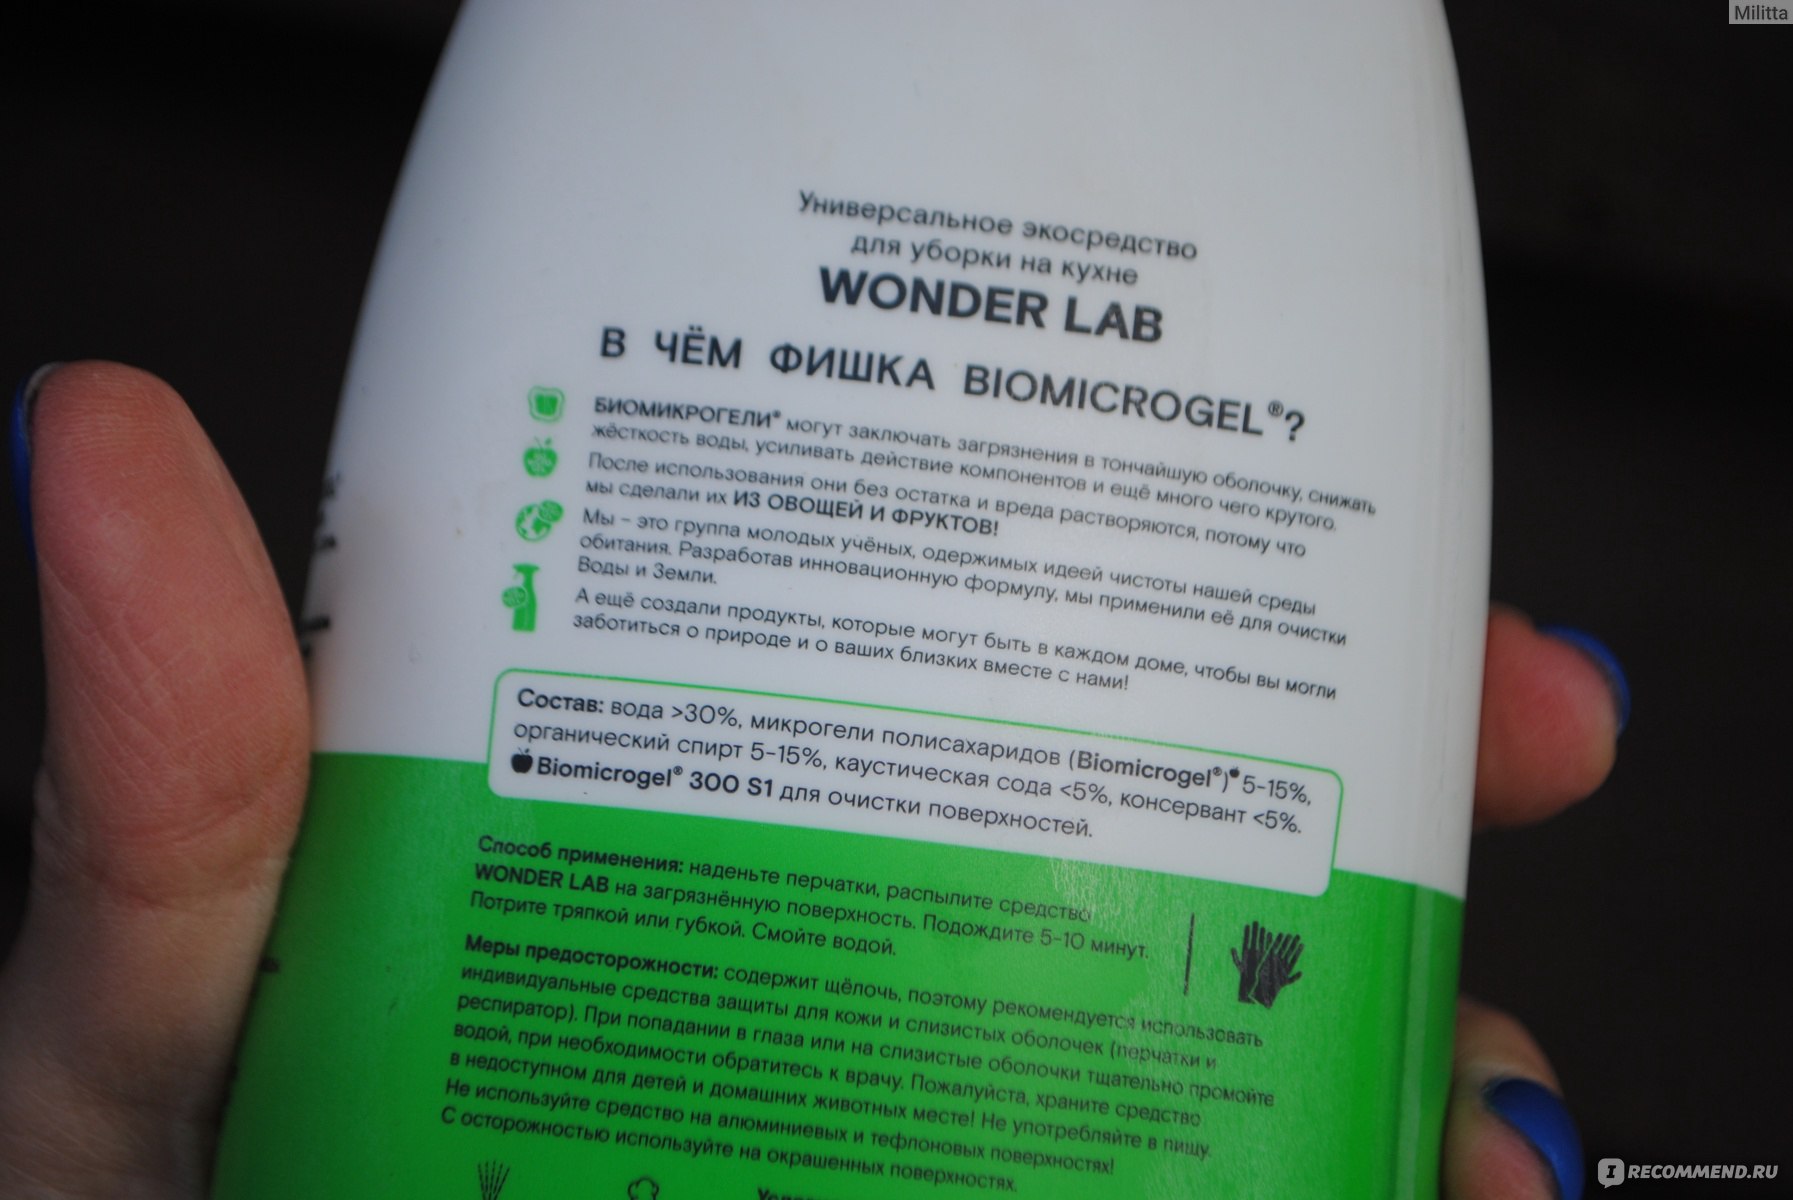 Wonder lab экосредство для чистки кухонных плит и духовых шкафов и грилей 0 5 л